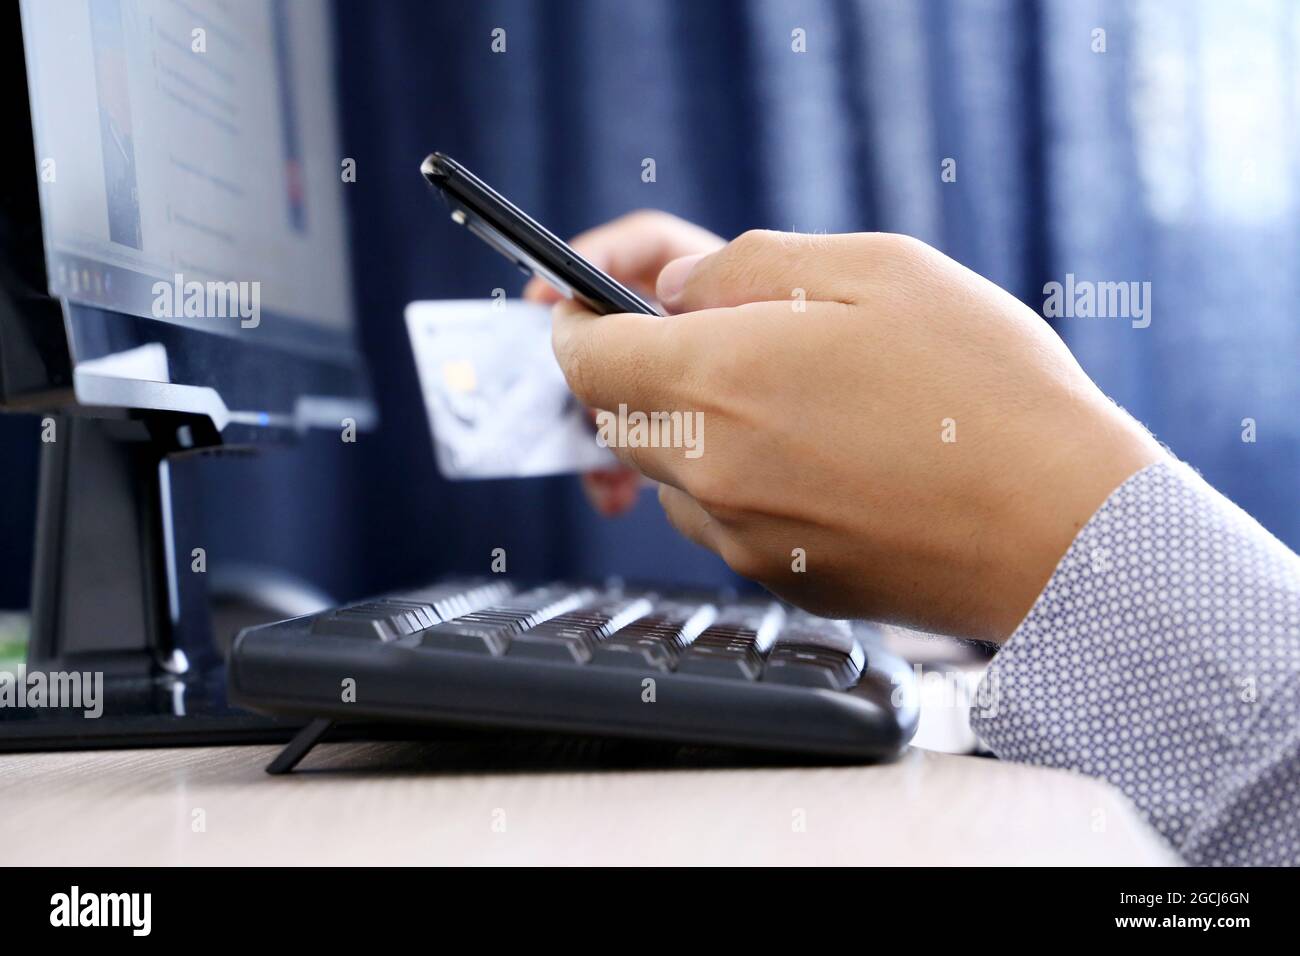 L'uomo tiene lo smartphone e la tastiera della carta di credito sulla tastiera del PC. Concetto di acquisto e pagamento online, transazioni finanziarie Foto Stock